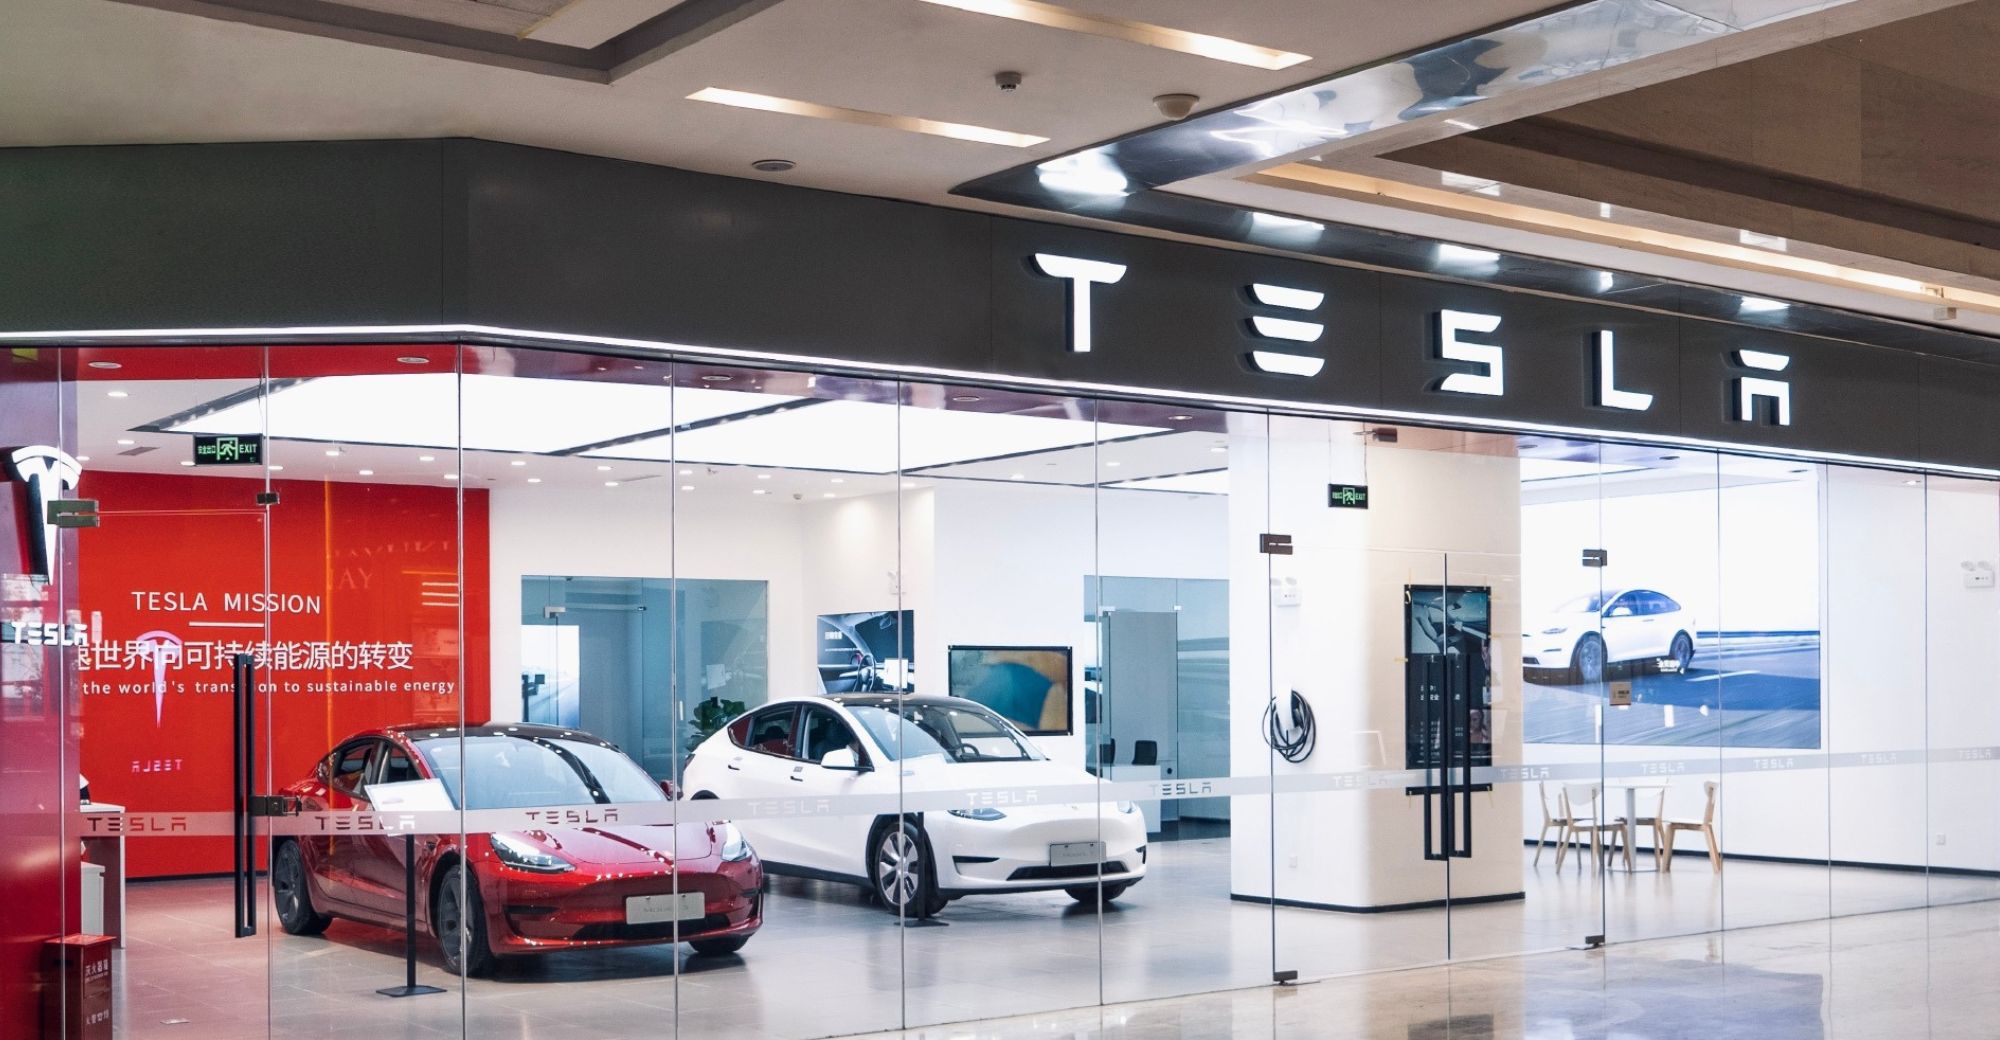 Tesla China သည်မည်သည့် ဘက်ထရီ အသစ် ကိုမဆို အသုံးပြု သည်ဟု ကောလာဟလ များ ထွက်ပေါ် ခဲ့သည်